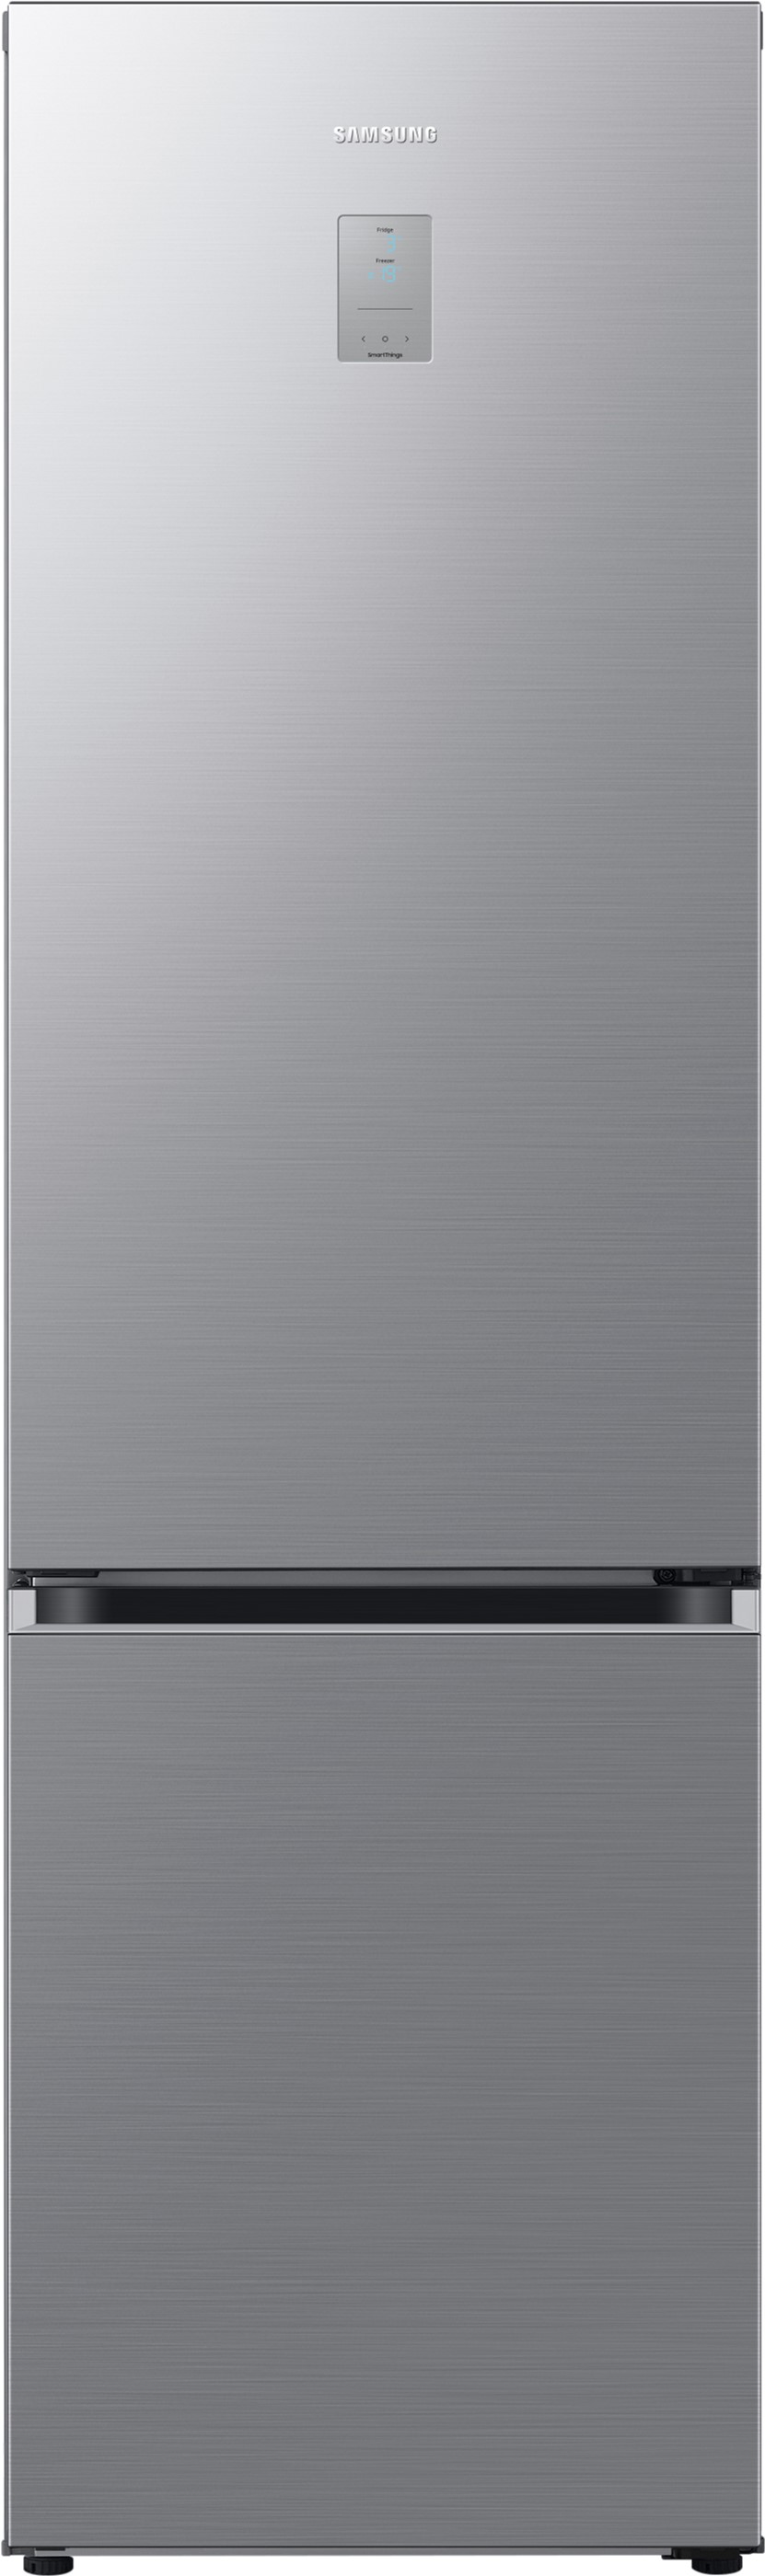 Холодильник Samsung RB38C676ES9/UA в интернет-магазине, главное фото